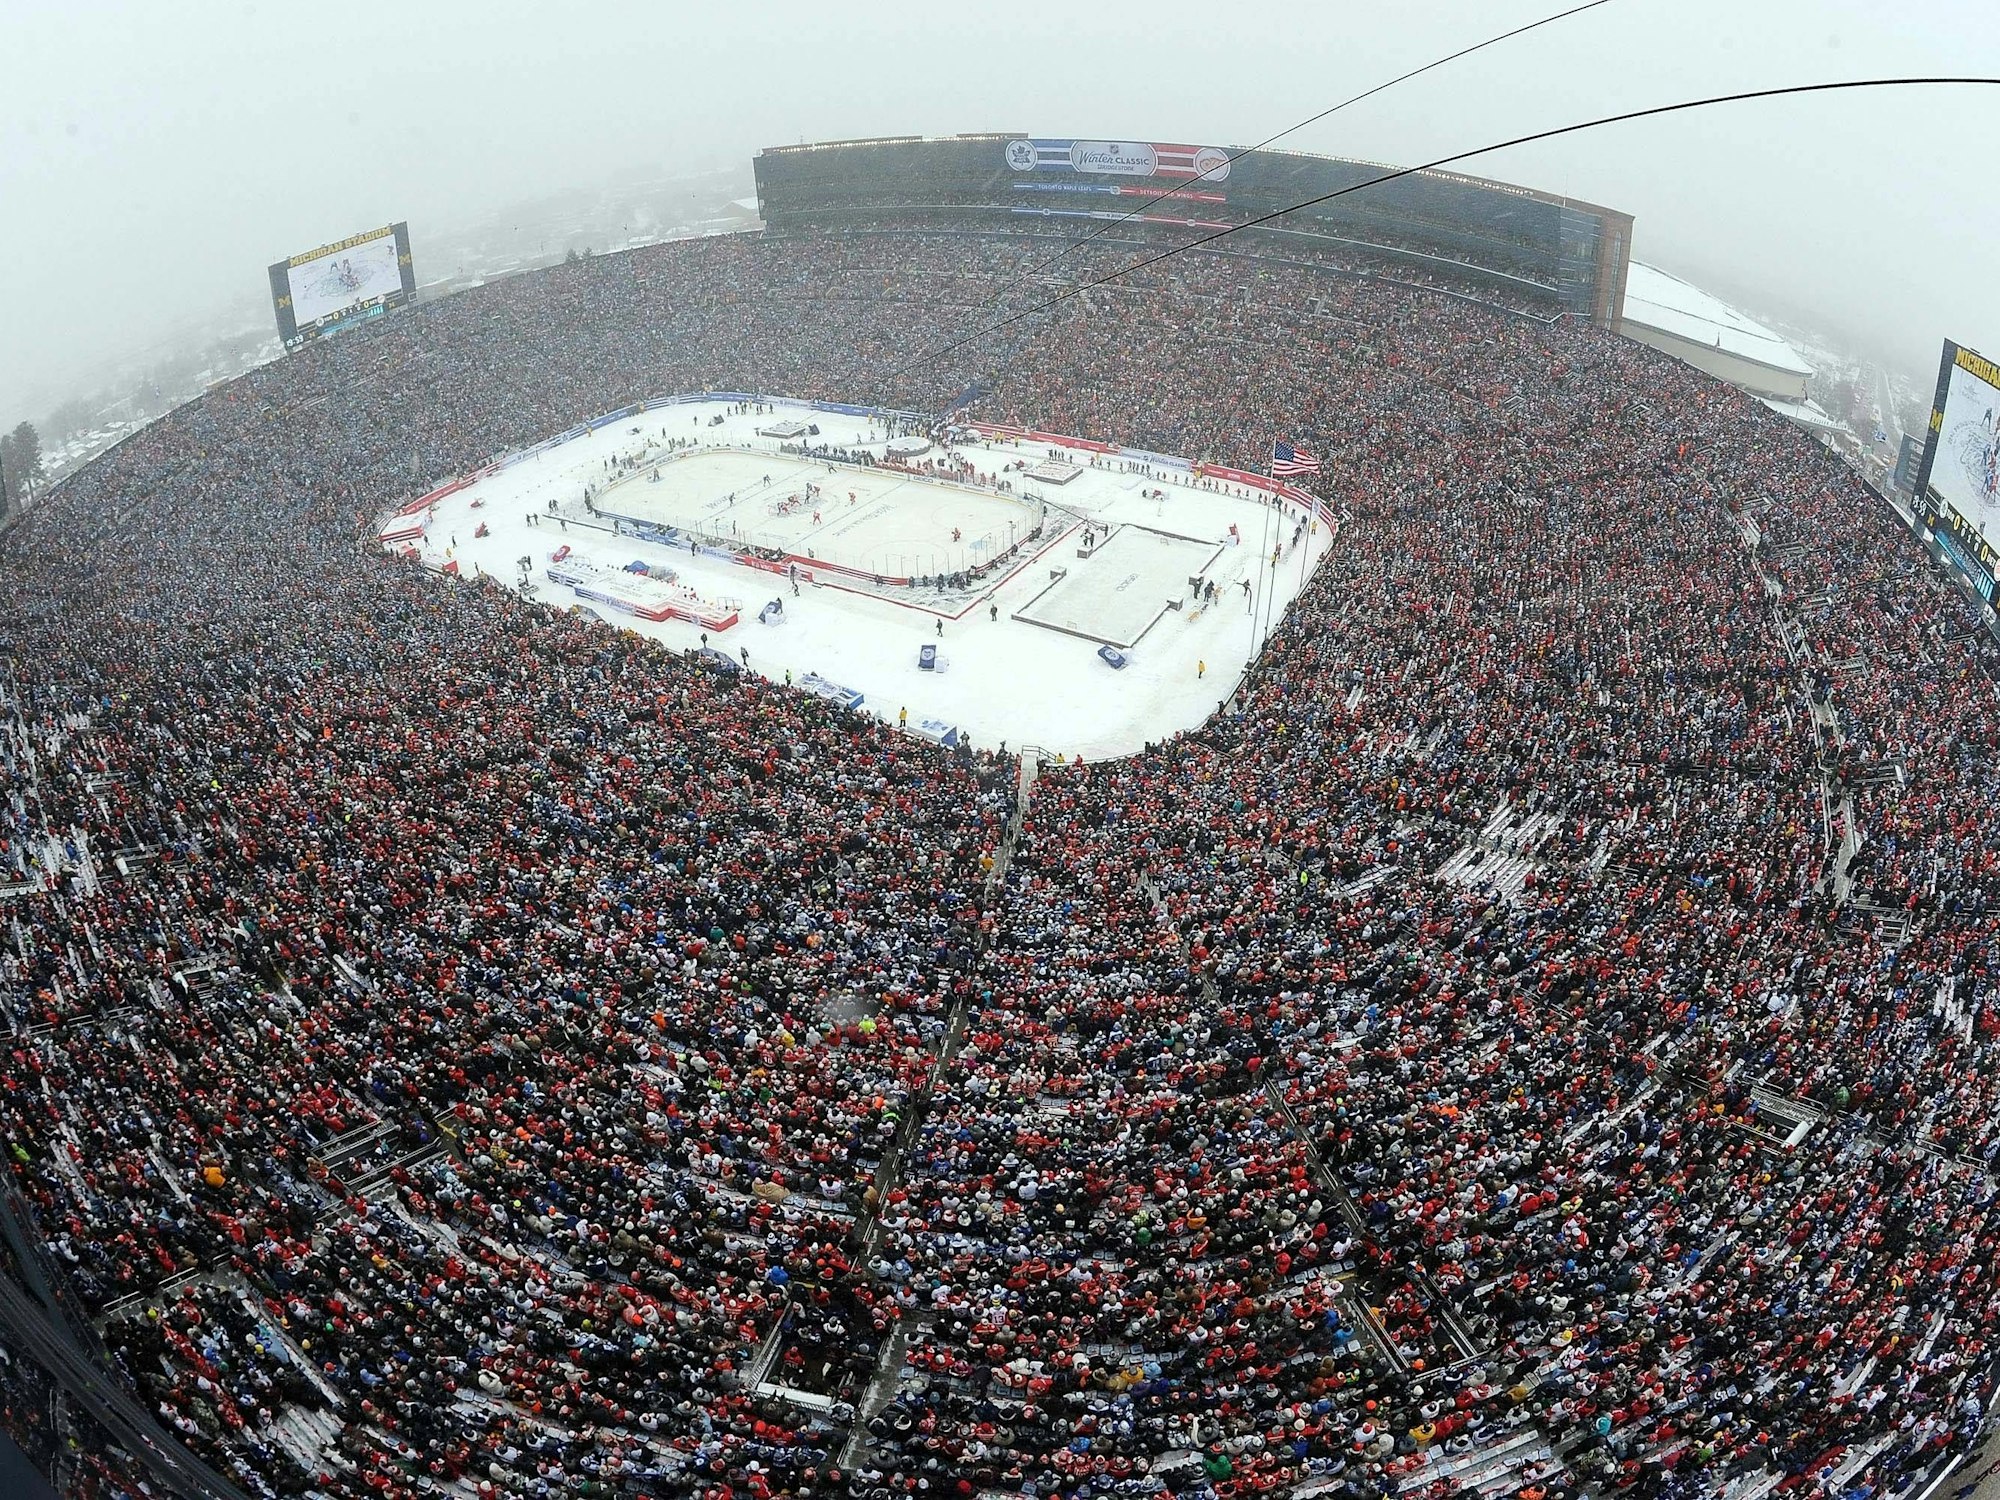 Luftbild vom Michigan Stadium während des NHL Winter Classic.